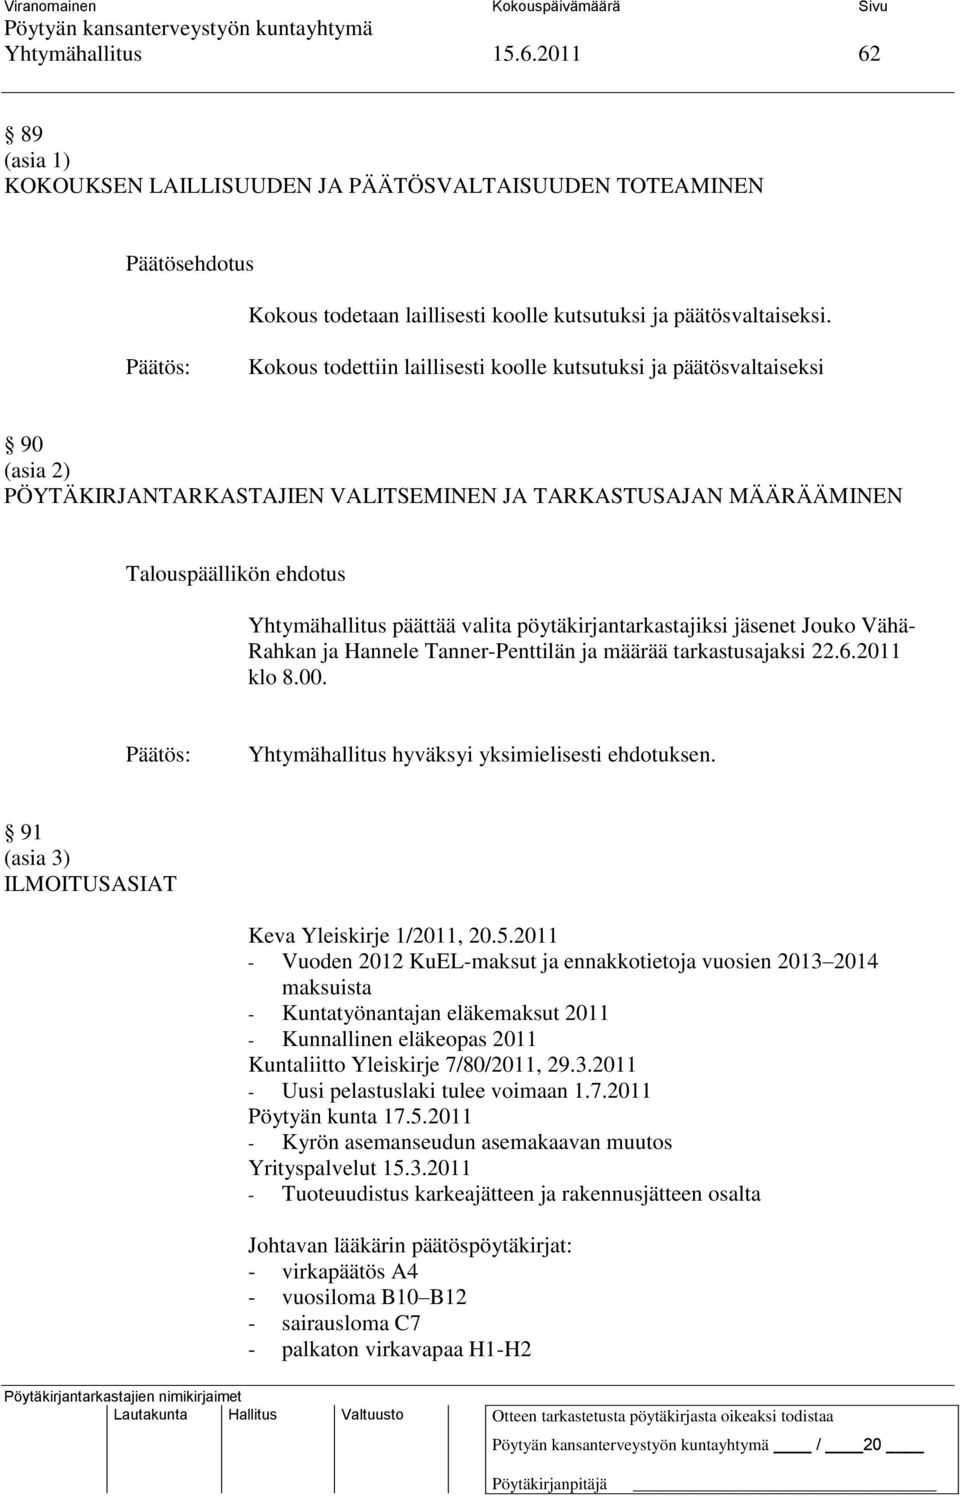 pöytäkirjantarkastajiksi jäsenet Jouko Vähä- Rahkan ja Hannele Tanner-Penttilän ja määrää tarkastusajaksi 22.6.2011 klo 8.00. Yhtymähallitus hyväksyi yksimielisesti ehdotuksen.